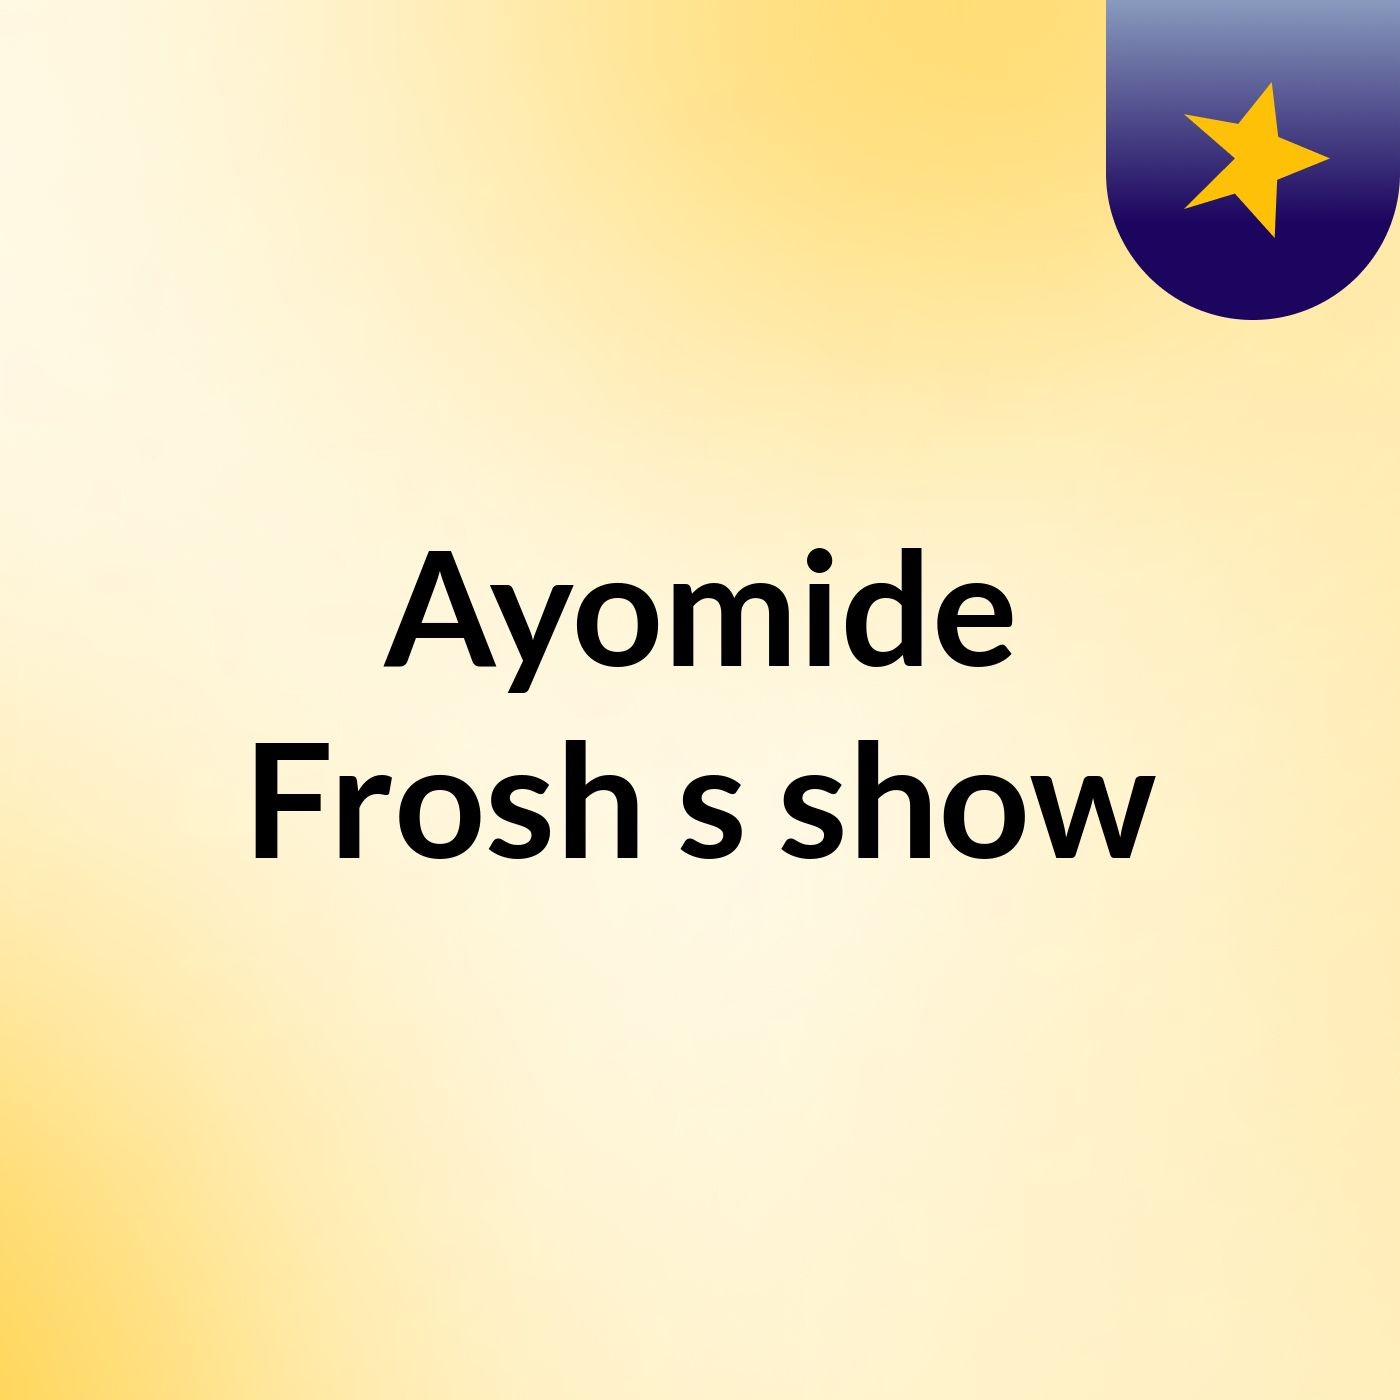 Episode 3 - Ayomide Frosh's show